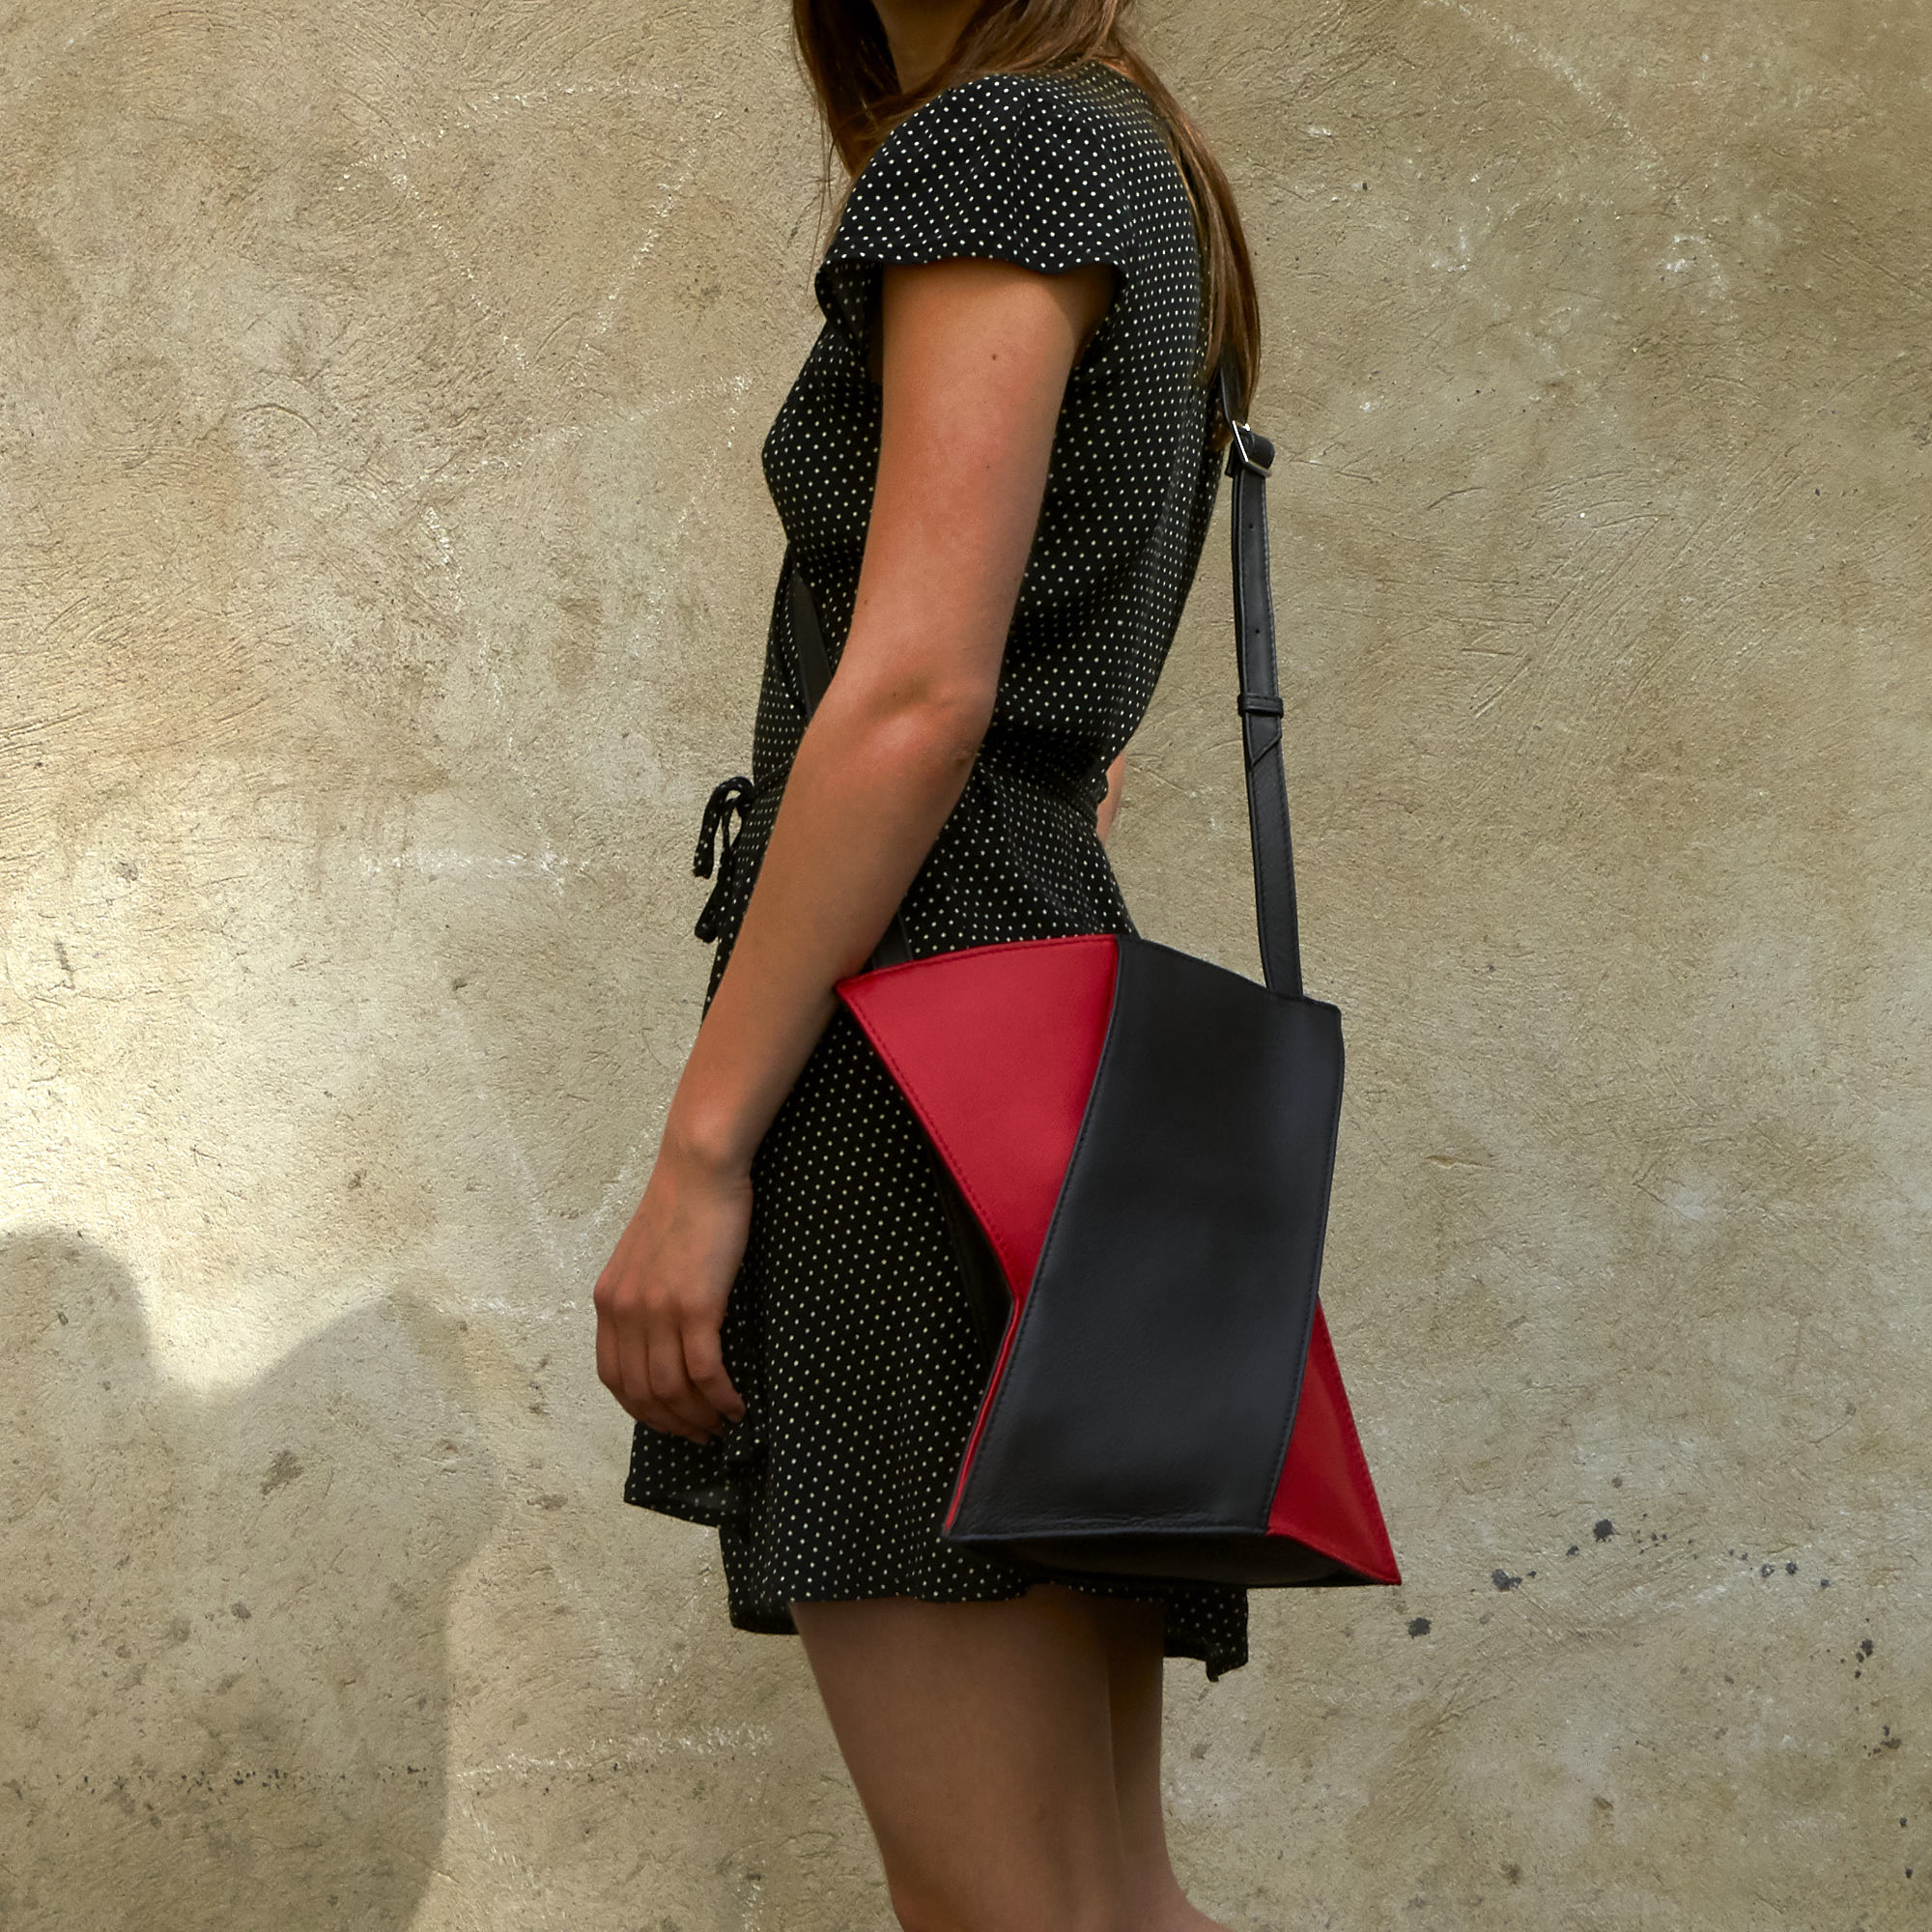 Frau trägt Olbrish Handtasche Generation X, Größe L, aus schwarz-rotem Nappaleder